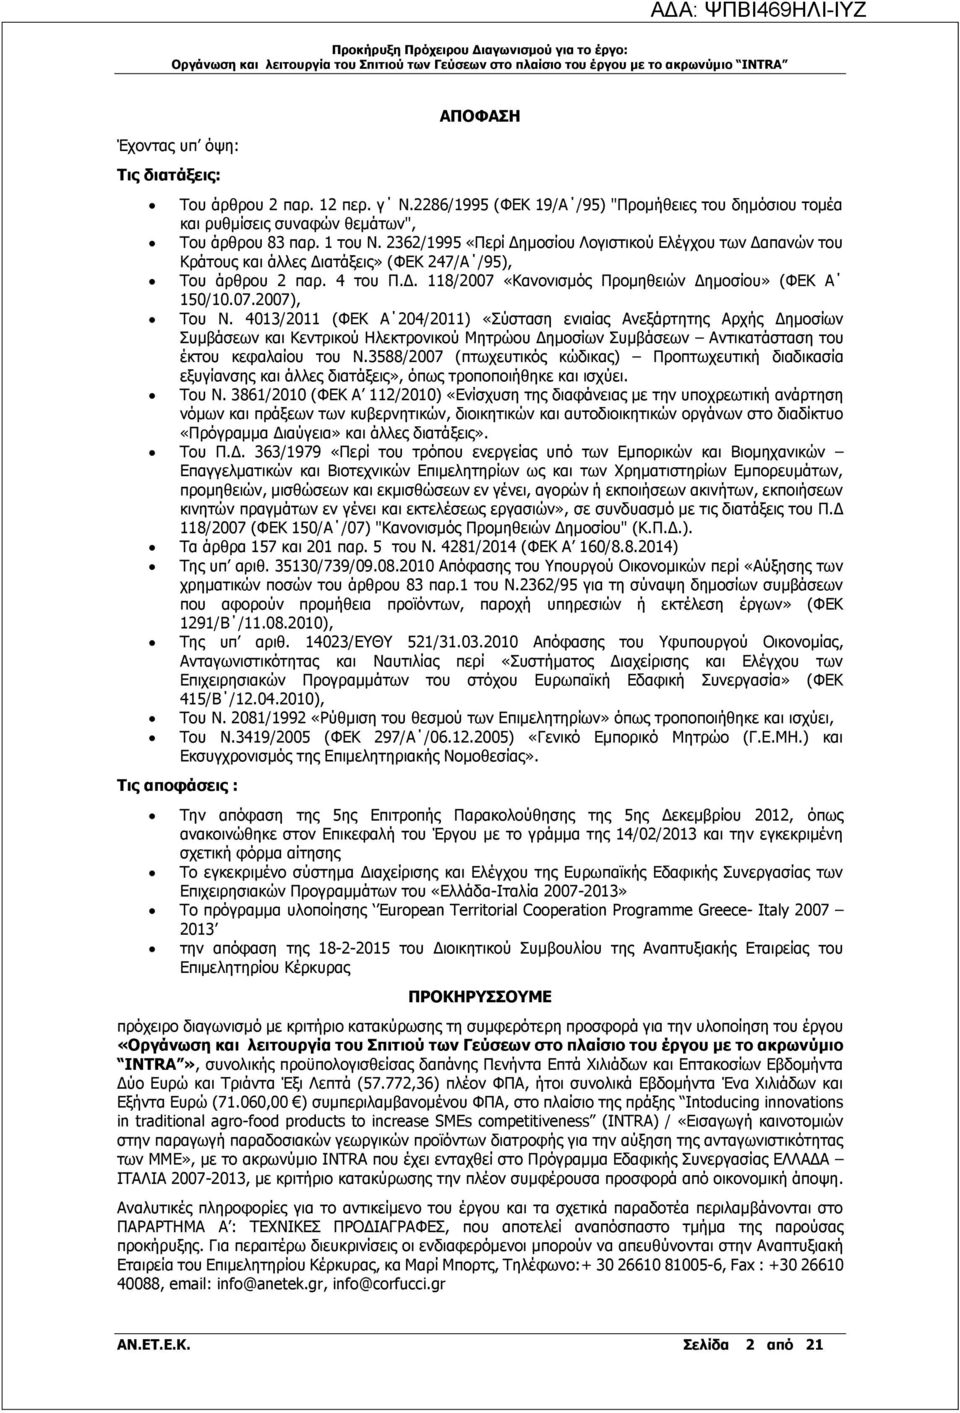 4013/2011 (ΦΕΚ Α 204/2011) «Σύσταση ενιαίας Ανεξάρτητης Αρχής Δημοσίων Συμβάσεων και Κεντρικού Ηλεκτρονικού Μητρώου Δημοσίων Συμβάσεων Αντικατάσταση του έκτου κεφαλαίου του Ν.